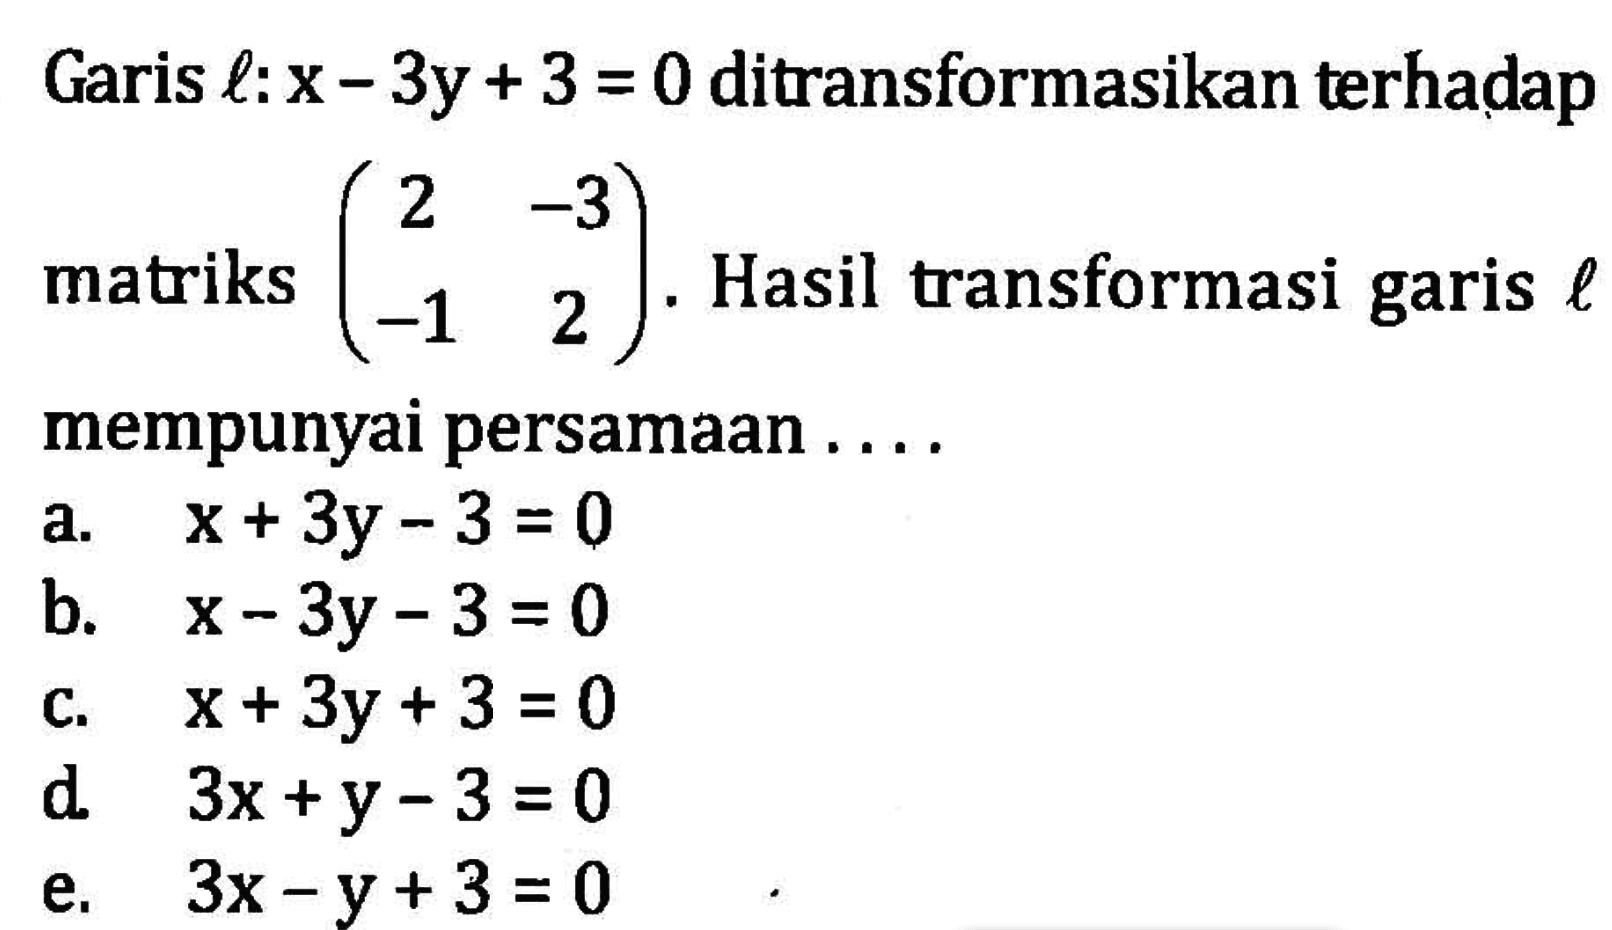 Garis l: x-3y+3=0 ditransformasikan terhadap matriks (2 -3 -1 2). Hasil transformasi garis l mempunyai persamaan .... 